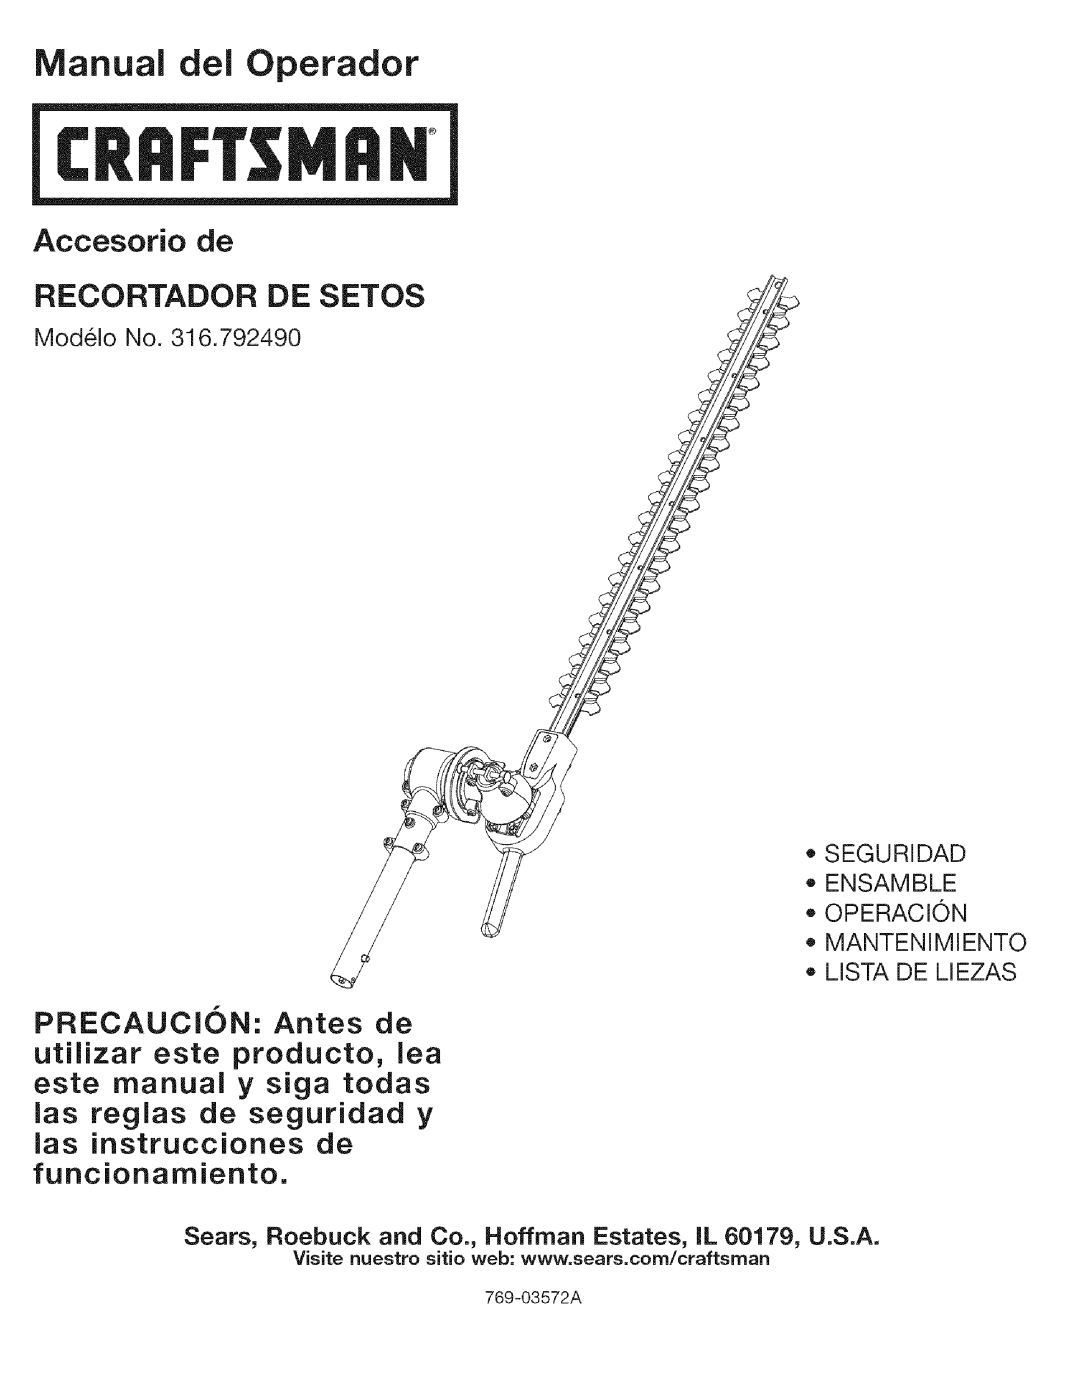 Craftsman 316.792490 Rill, Manual dei Operador, Accesorio de RECORTADOR DE SETOS, las reglas de seguridad y, 769-03572A 